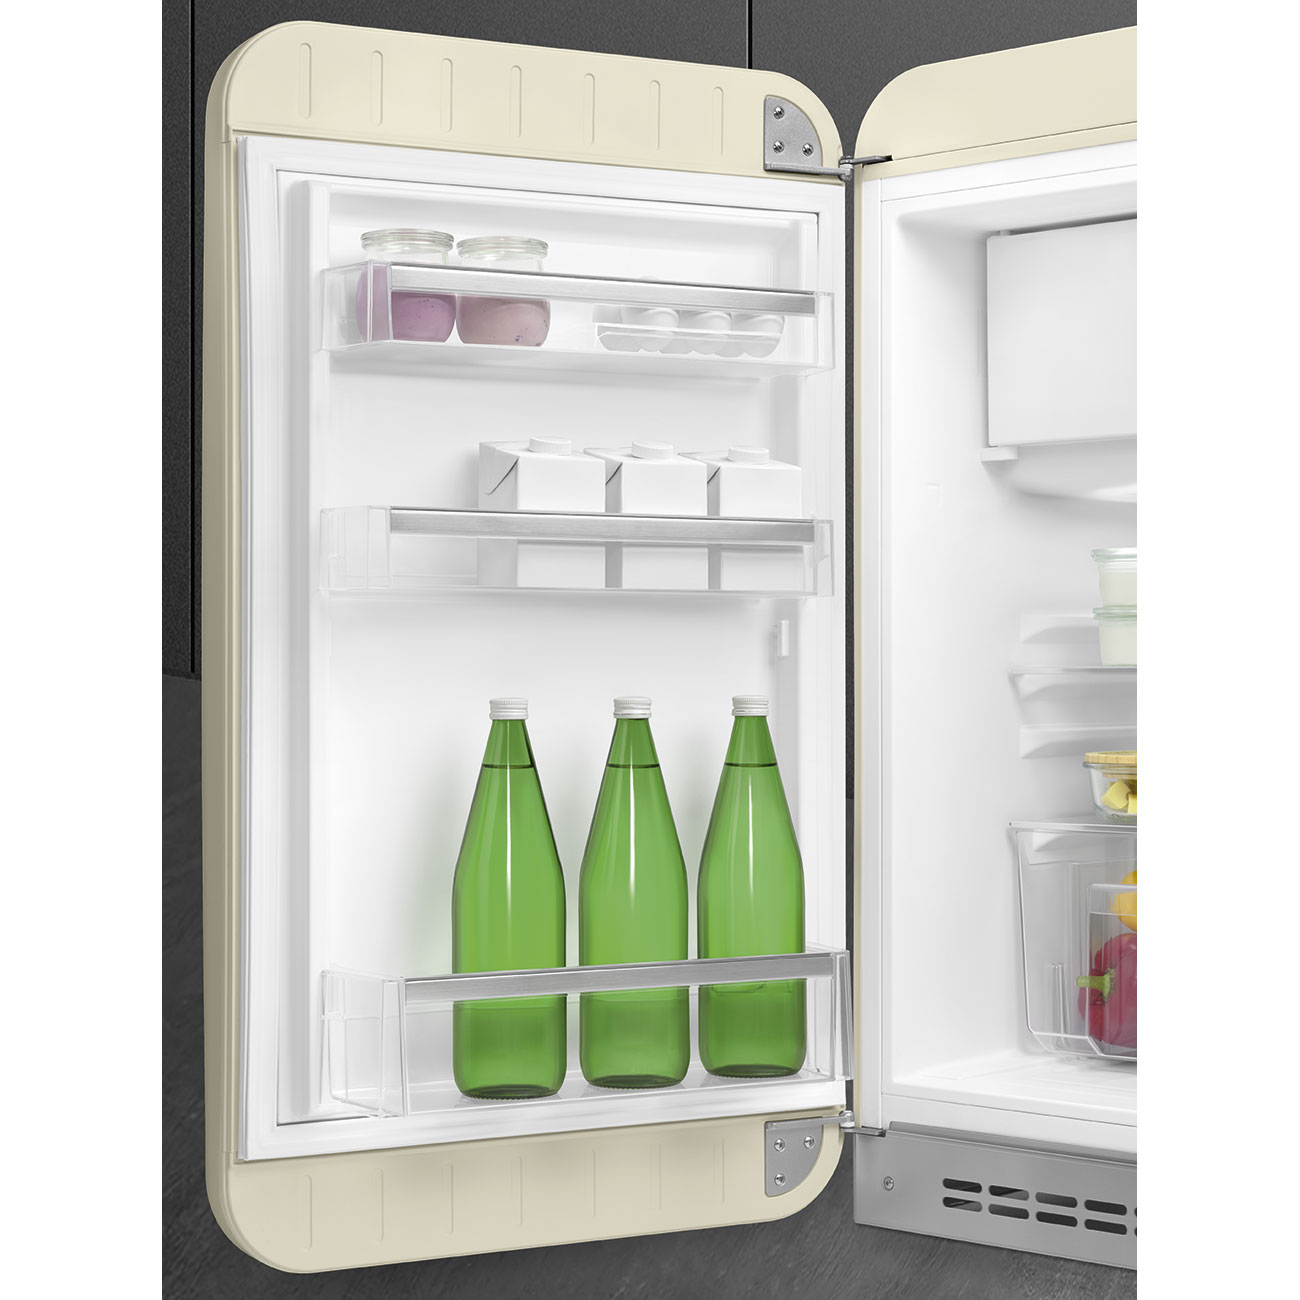 SMEG FAB10LCR5 Отдельностоящий однодверный холодильник,стиль 50-х годов, 54,5 см, кремовый, петли слева